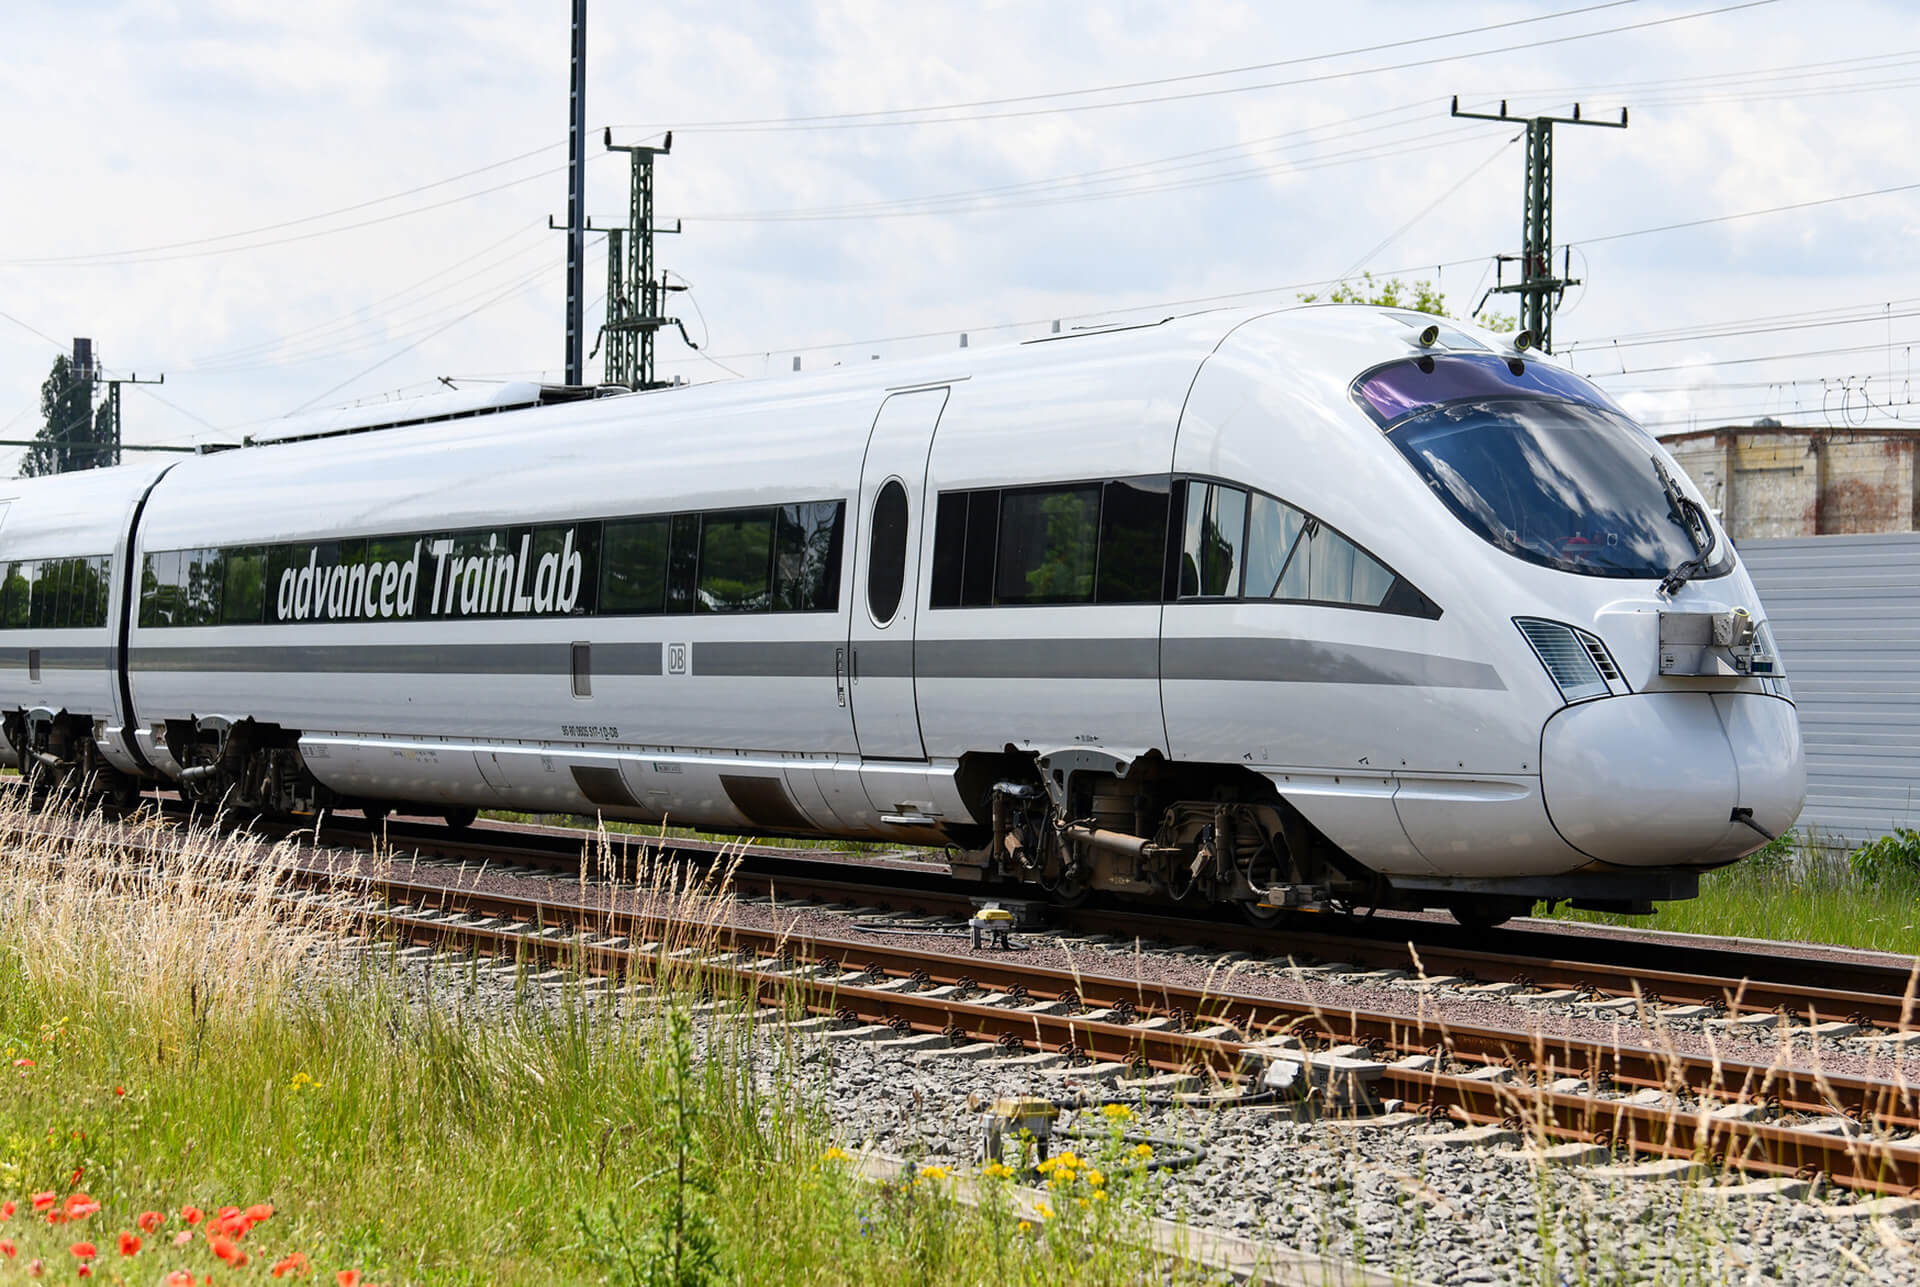 DaDas advanced TrainLab erforscht im fahrenden Zustand neue, umweltfreundliche Möglichkeiten für die Bahn